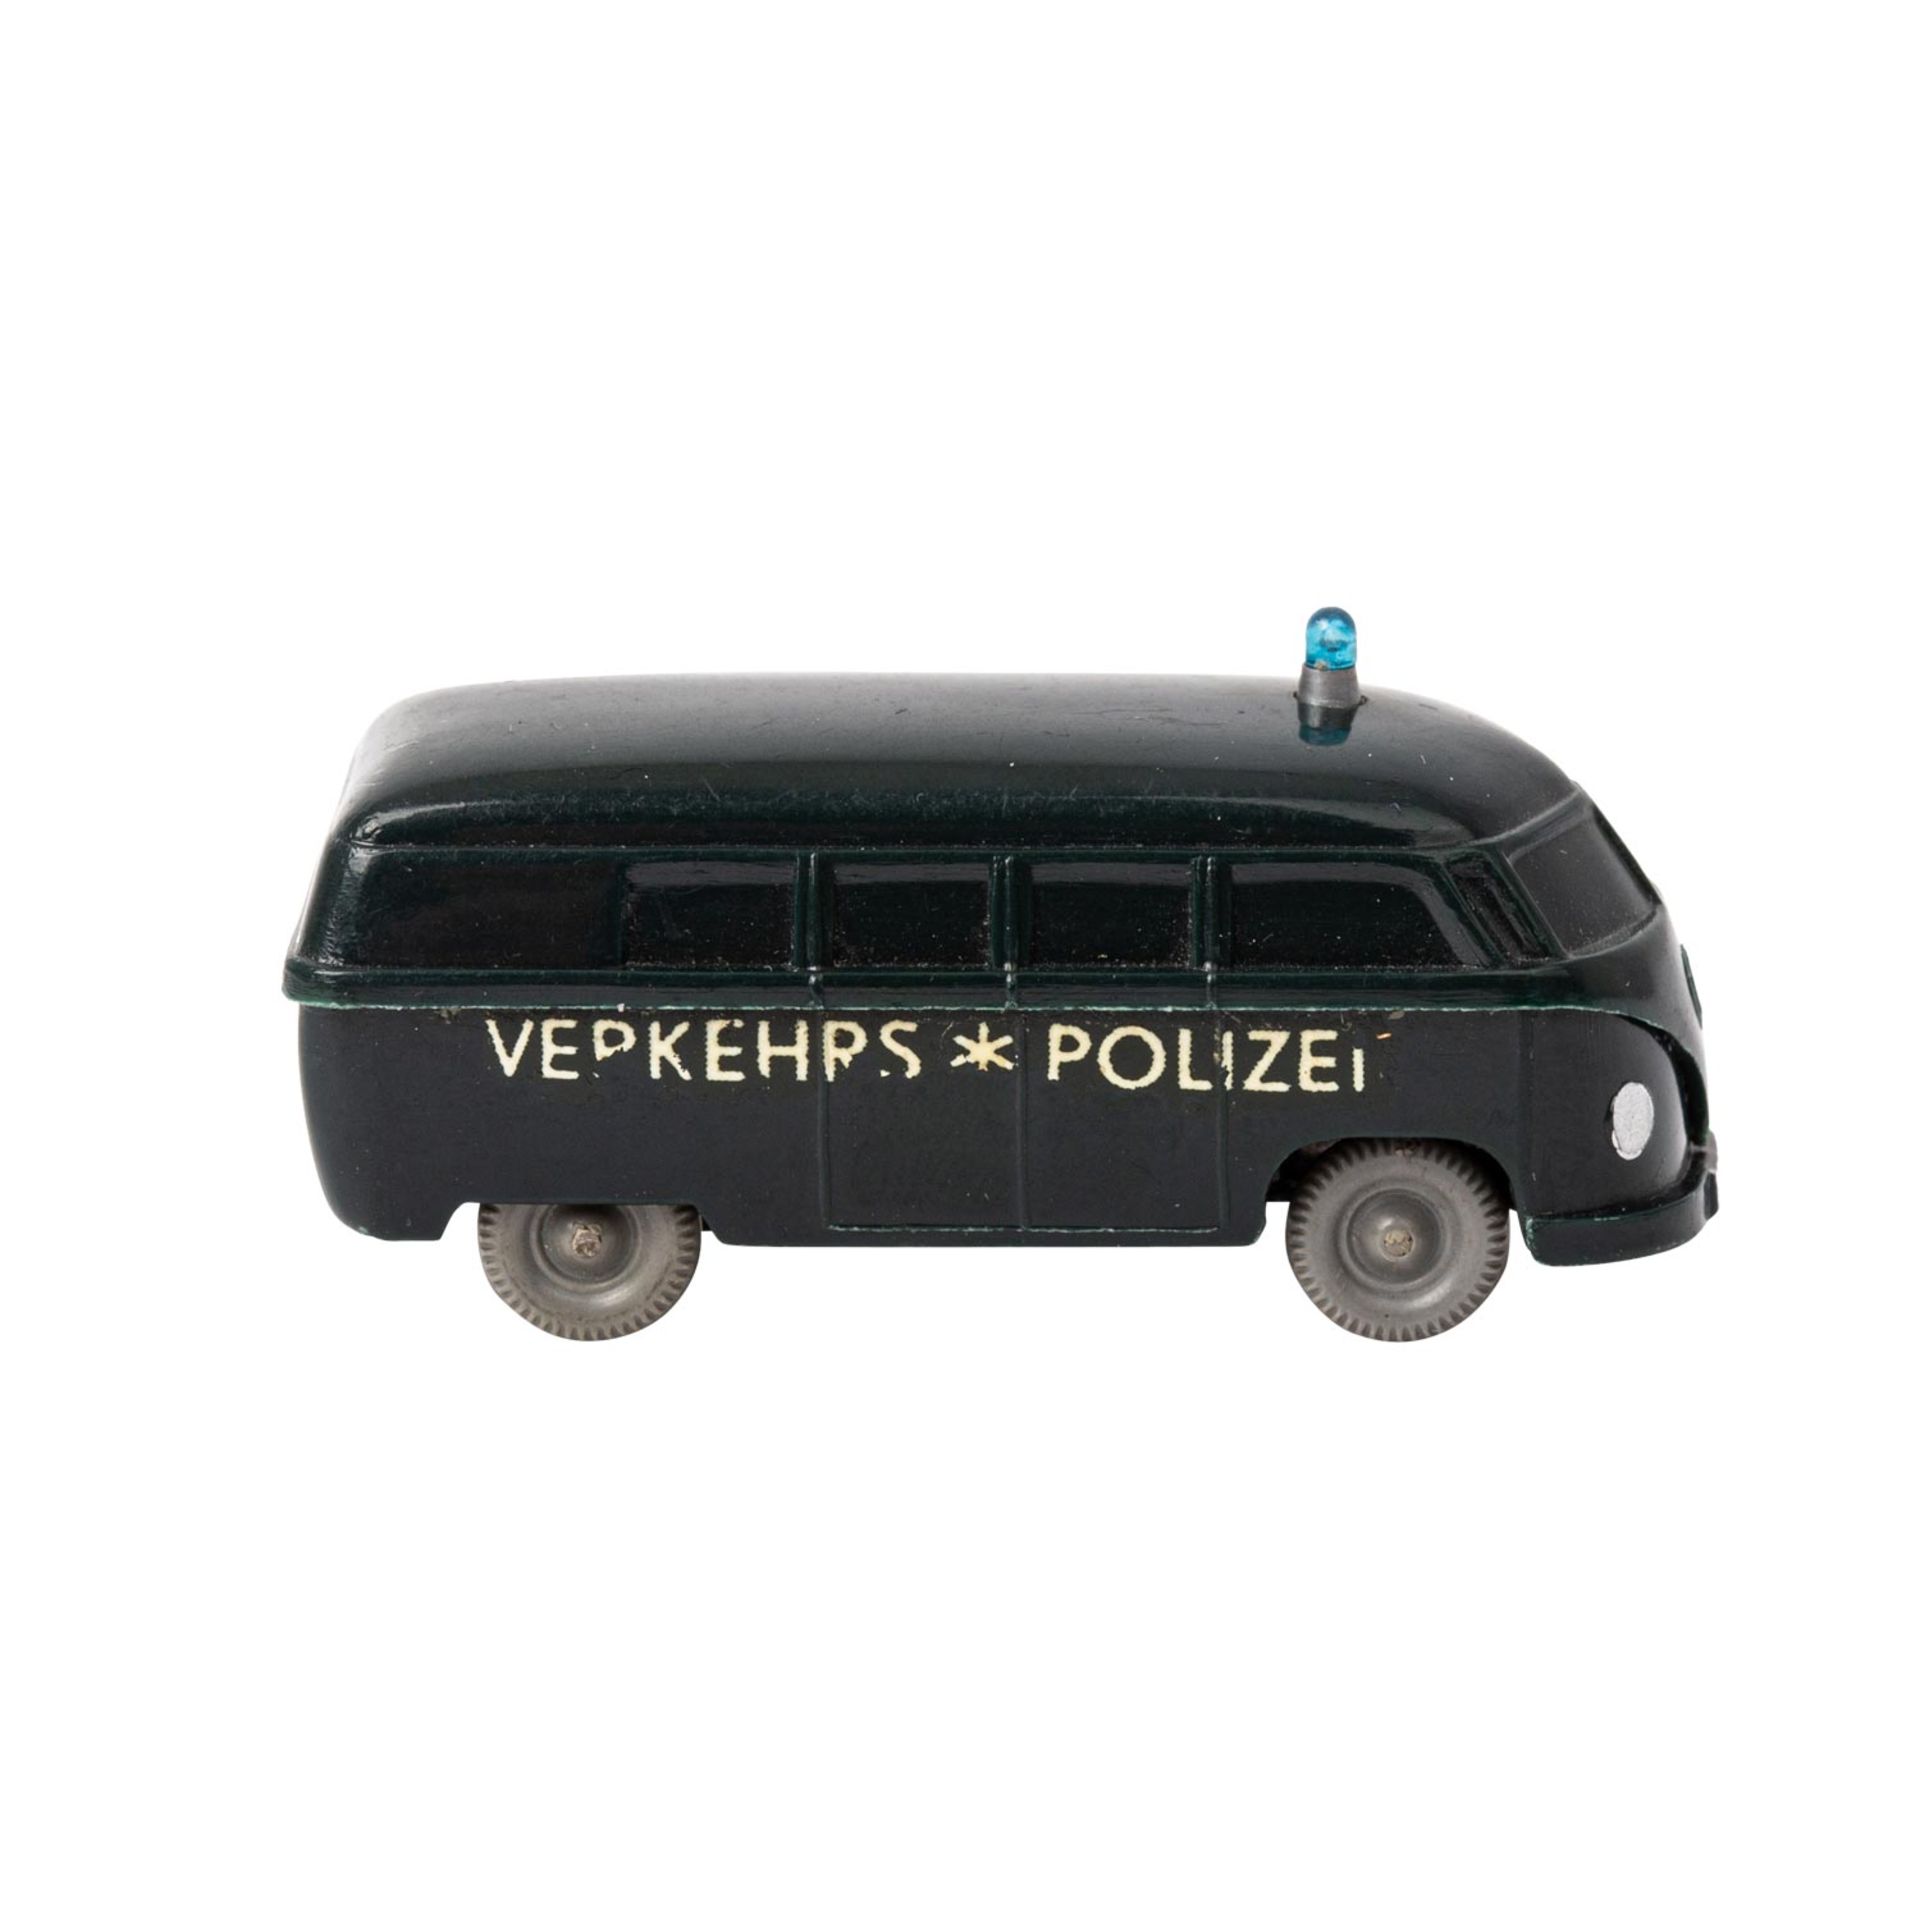 WIKING Polizei-Unfallwagen, 1959/60,unverglaster Rollachser, VW-Bus, schwarzgrüne Kar - Bild 4 aus 5